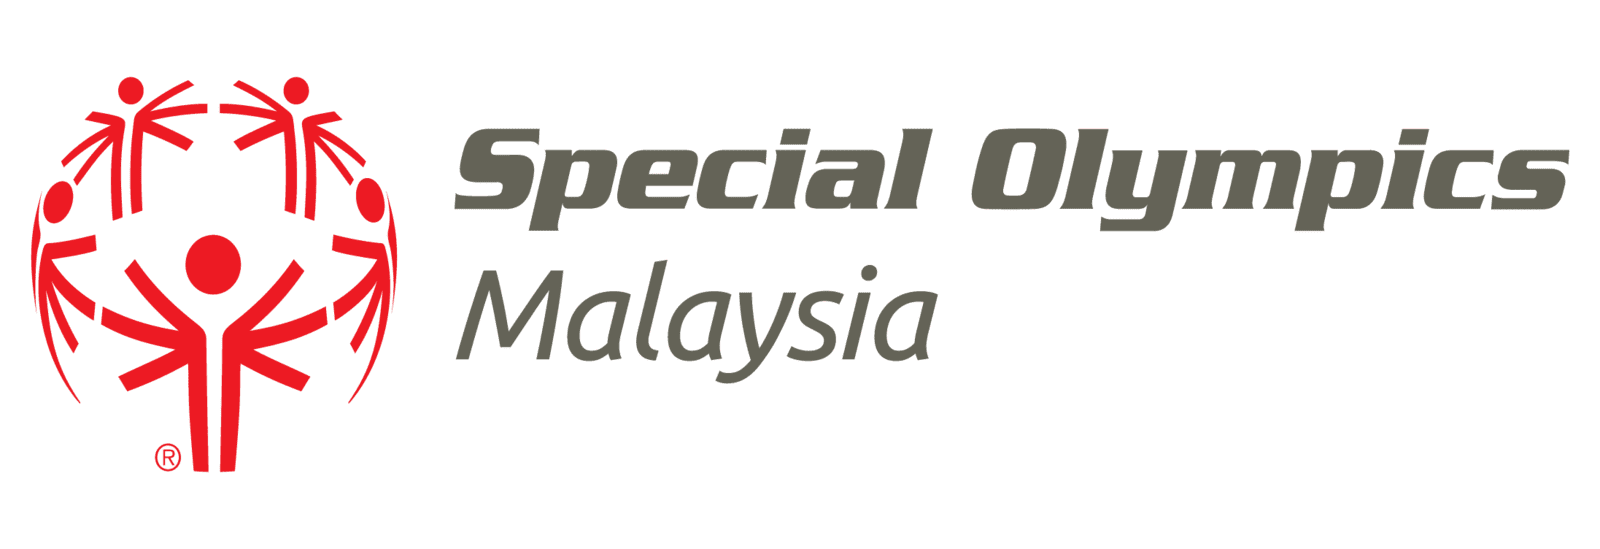 Special Olympics Malaysia